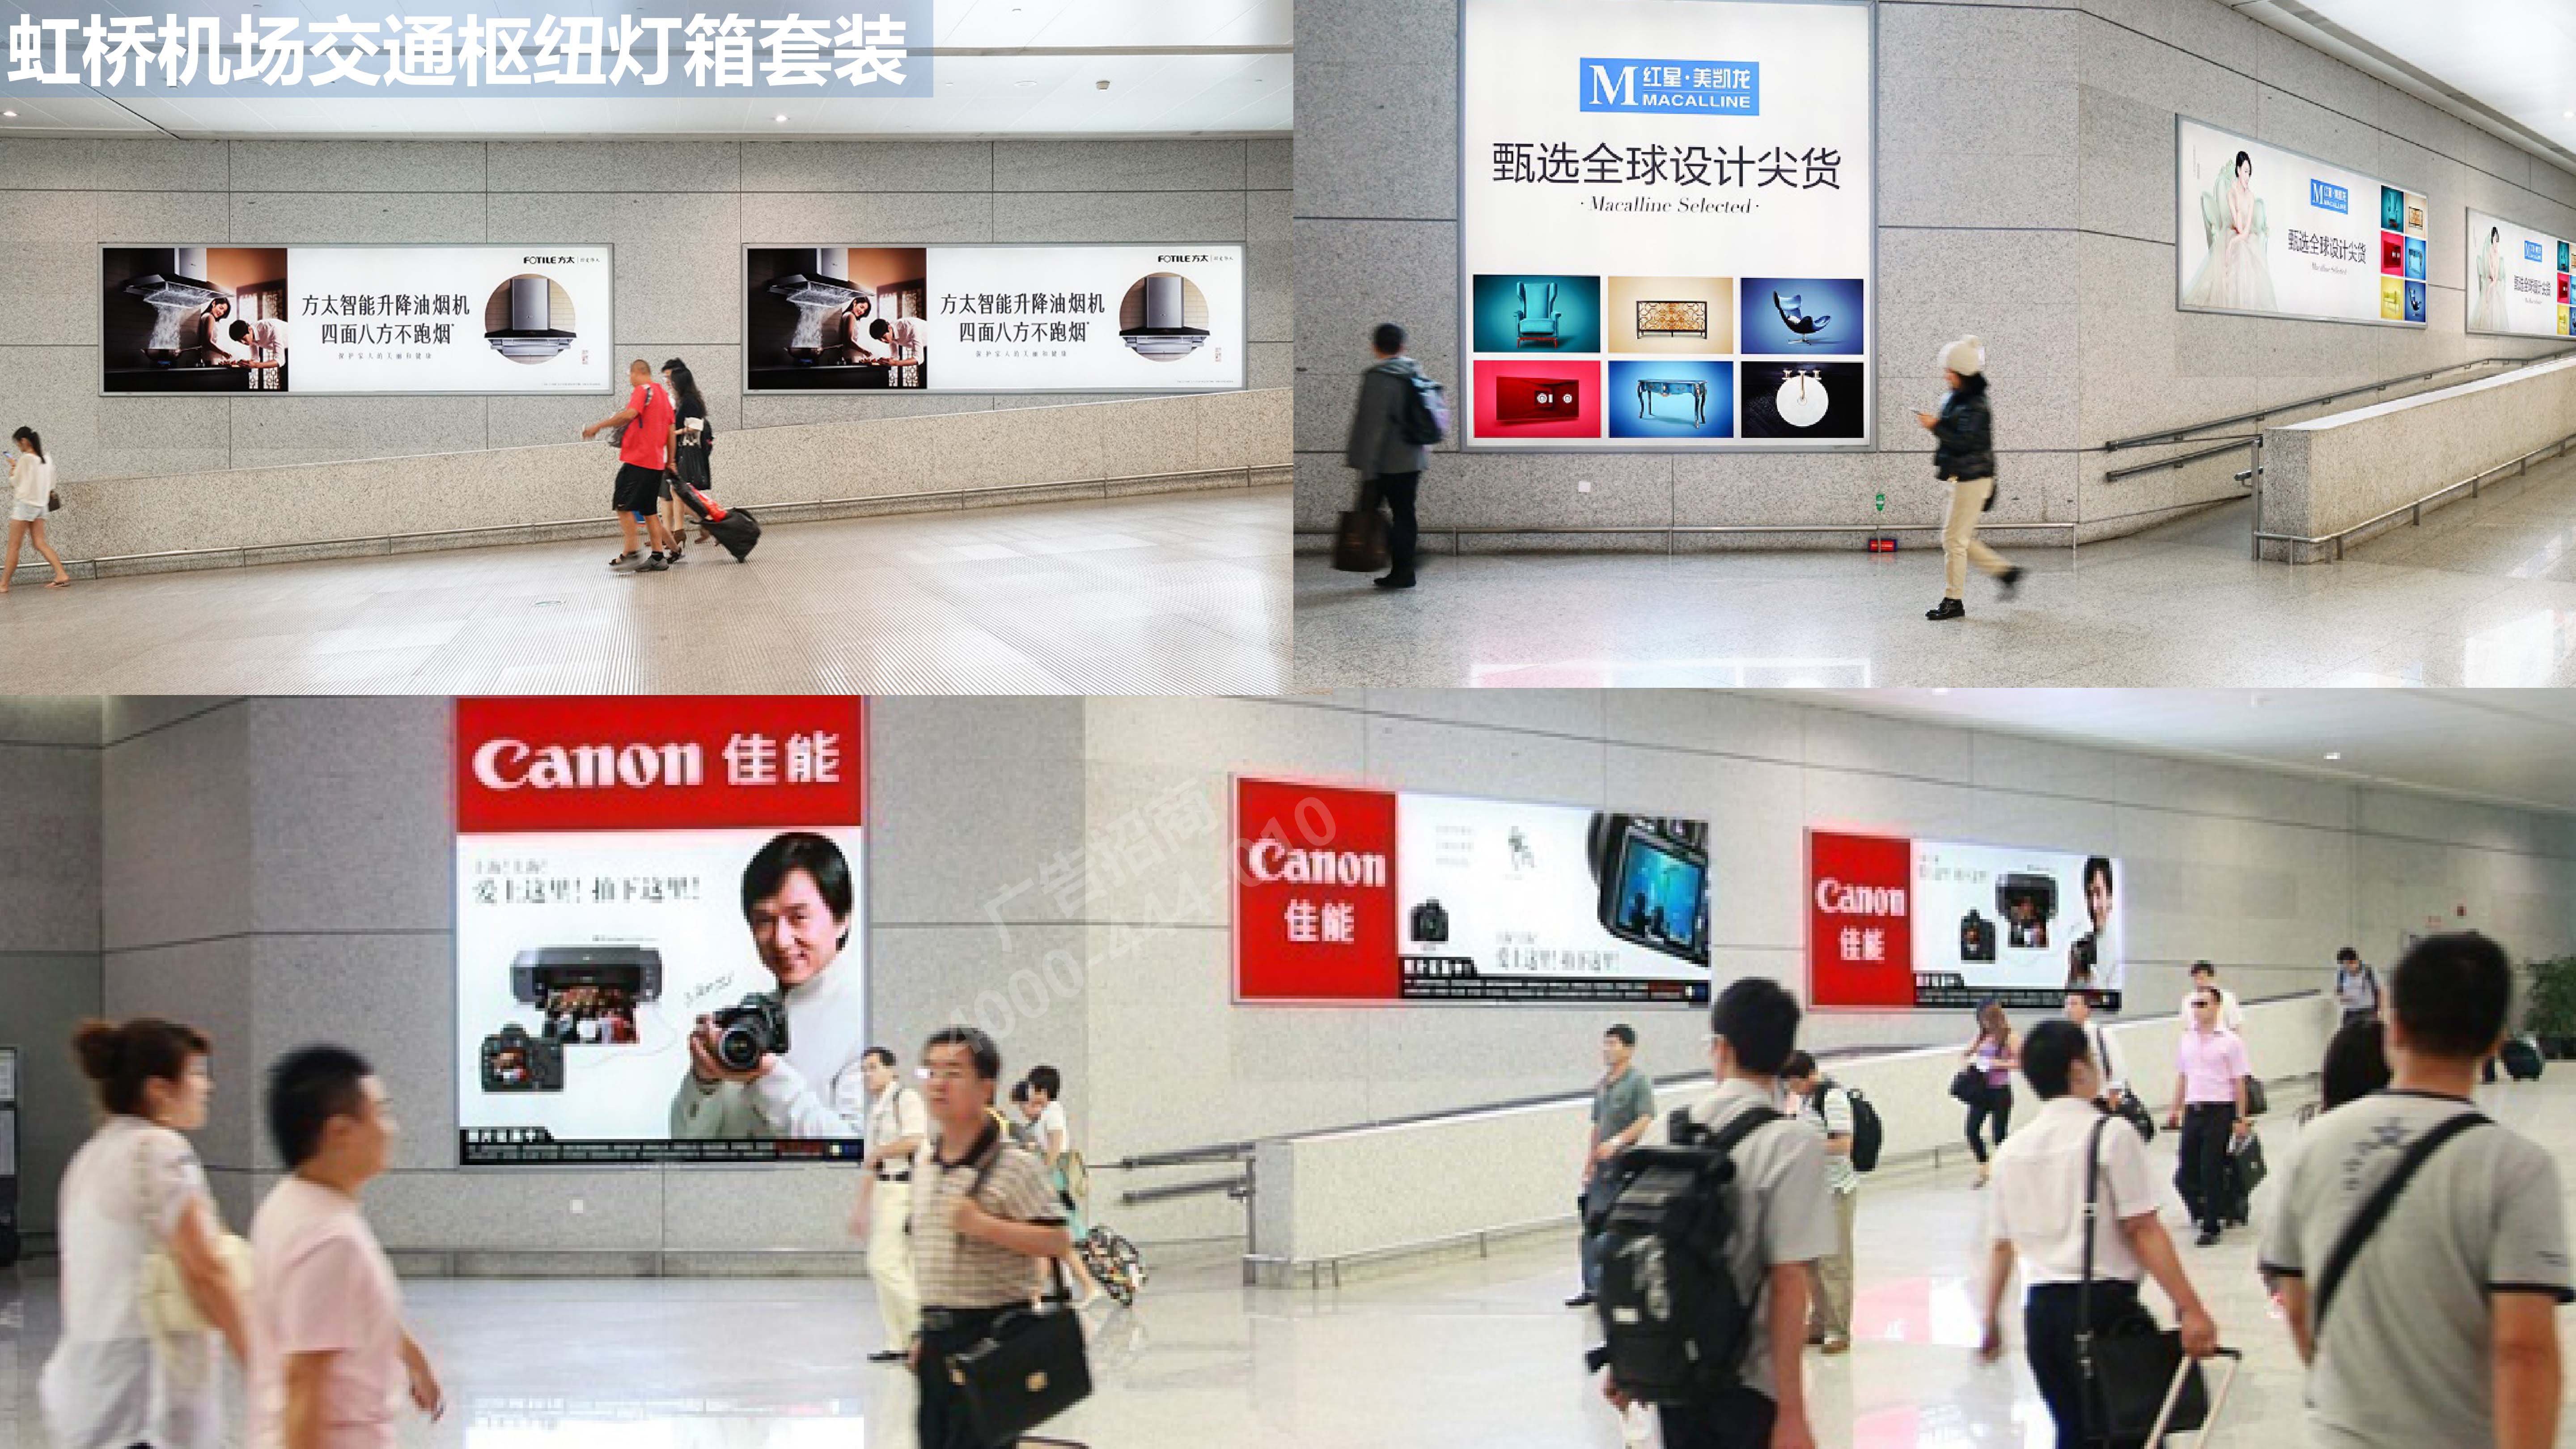 上海机场交通枢纽广告